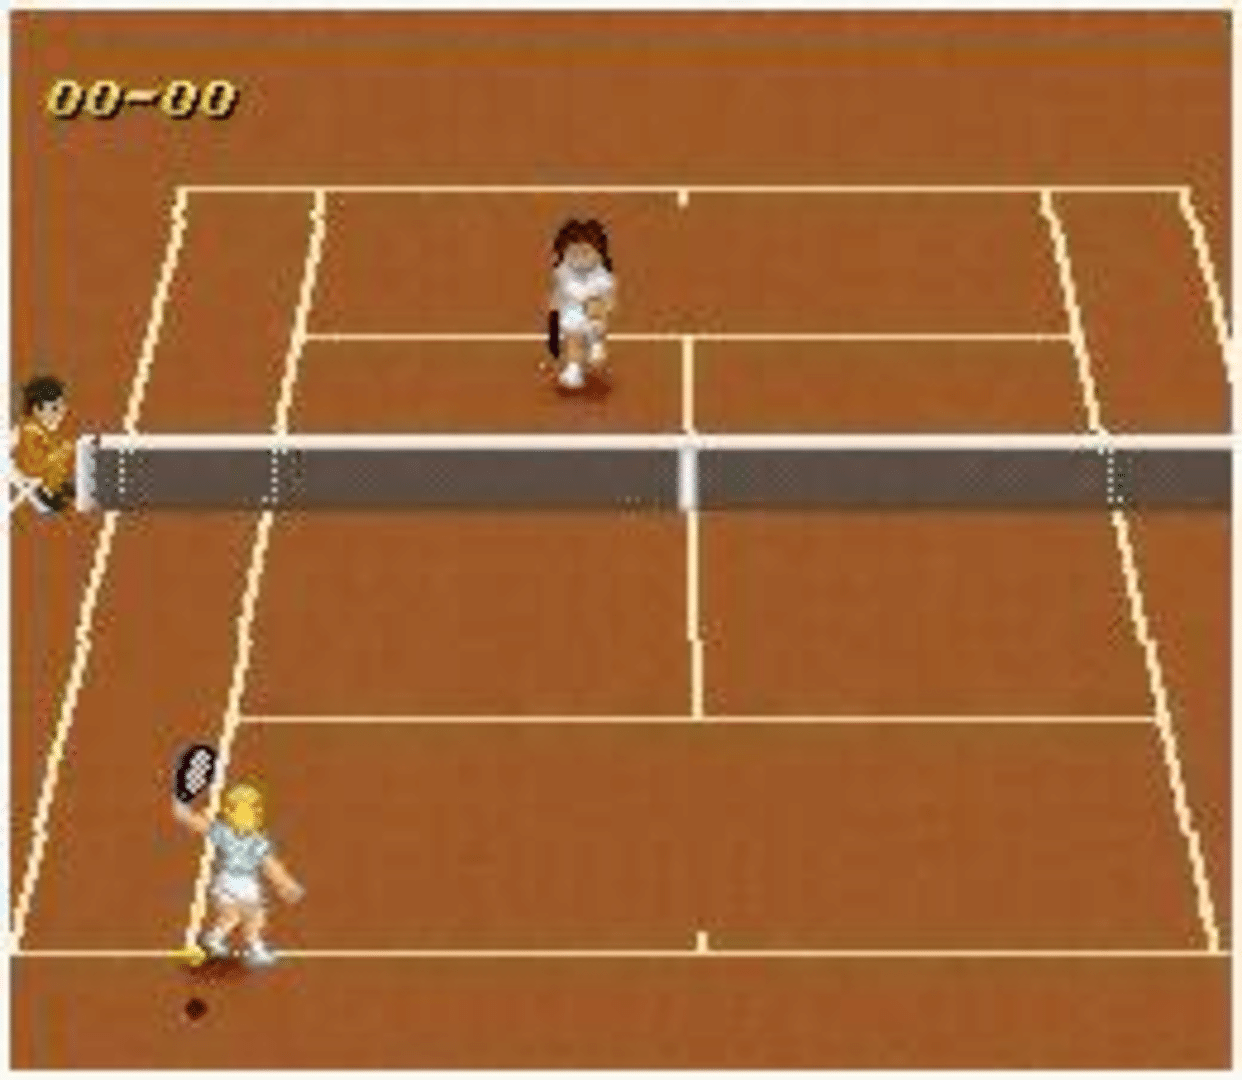 Super Tennis screenshot